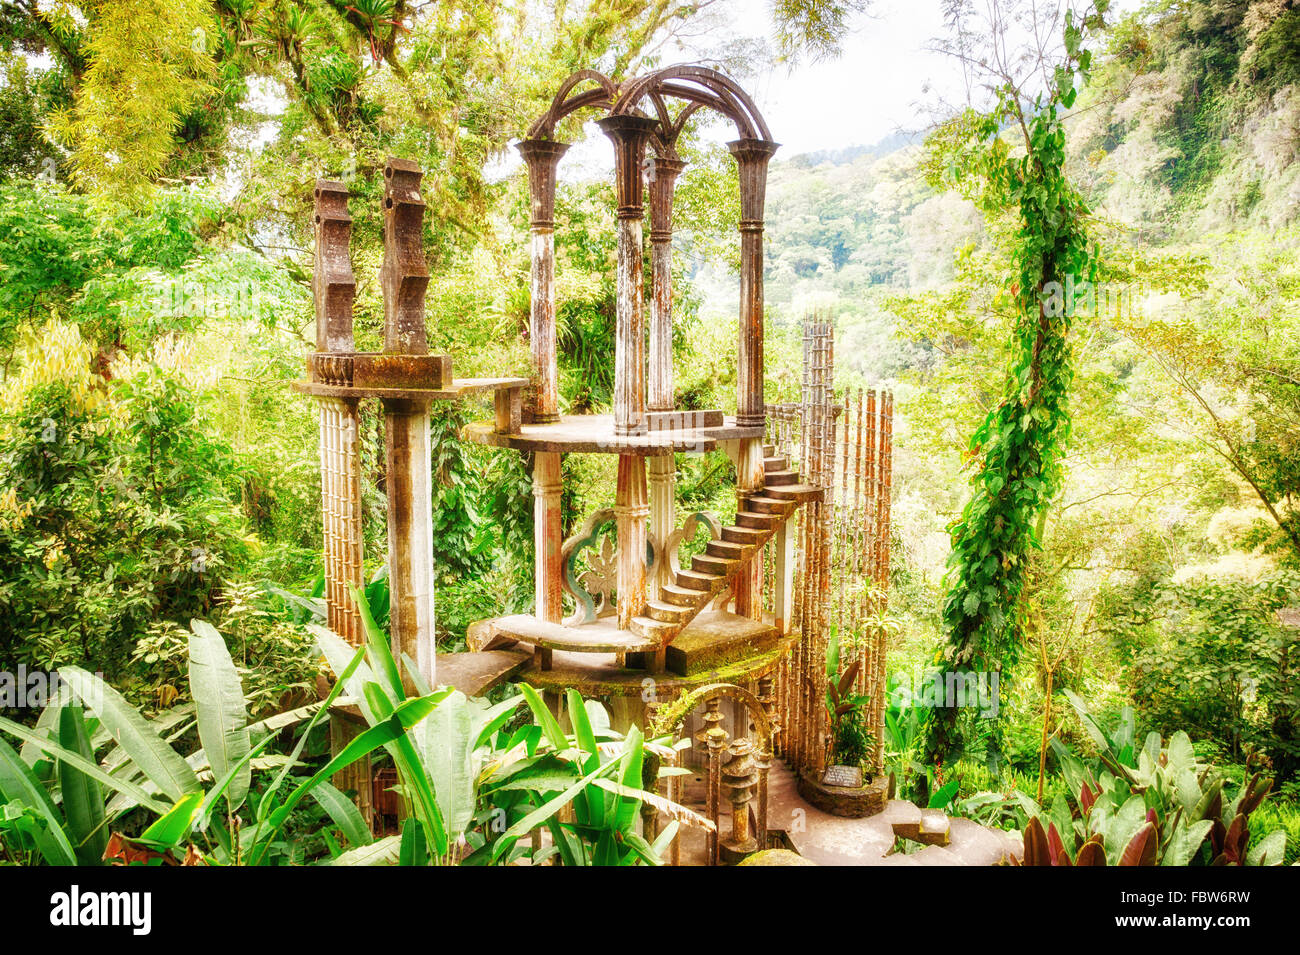 Staircase to Heaven in the surreal garden of Las Pozas near Xilitla, Mexico. Stock Photo